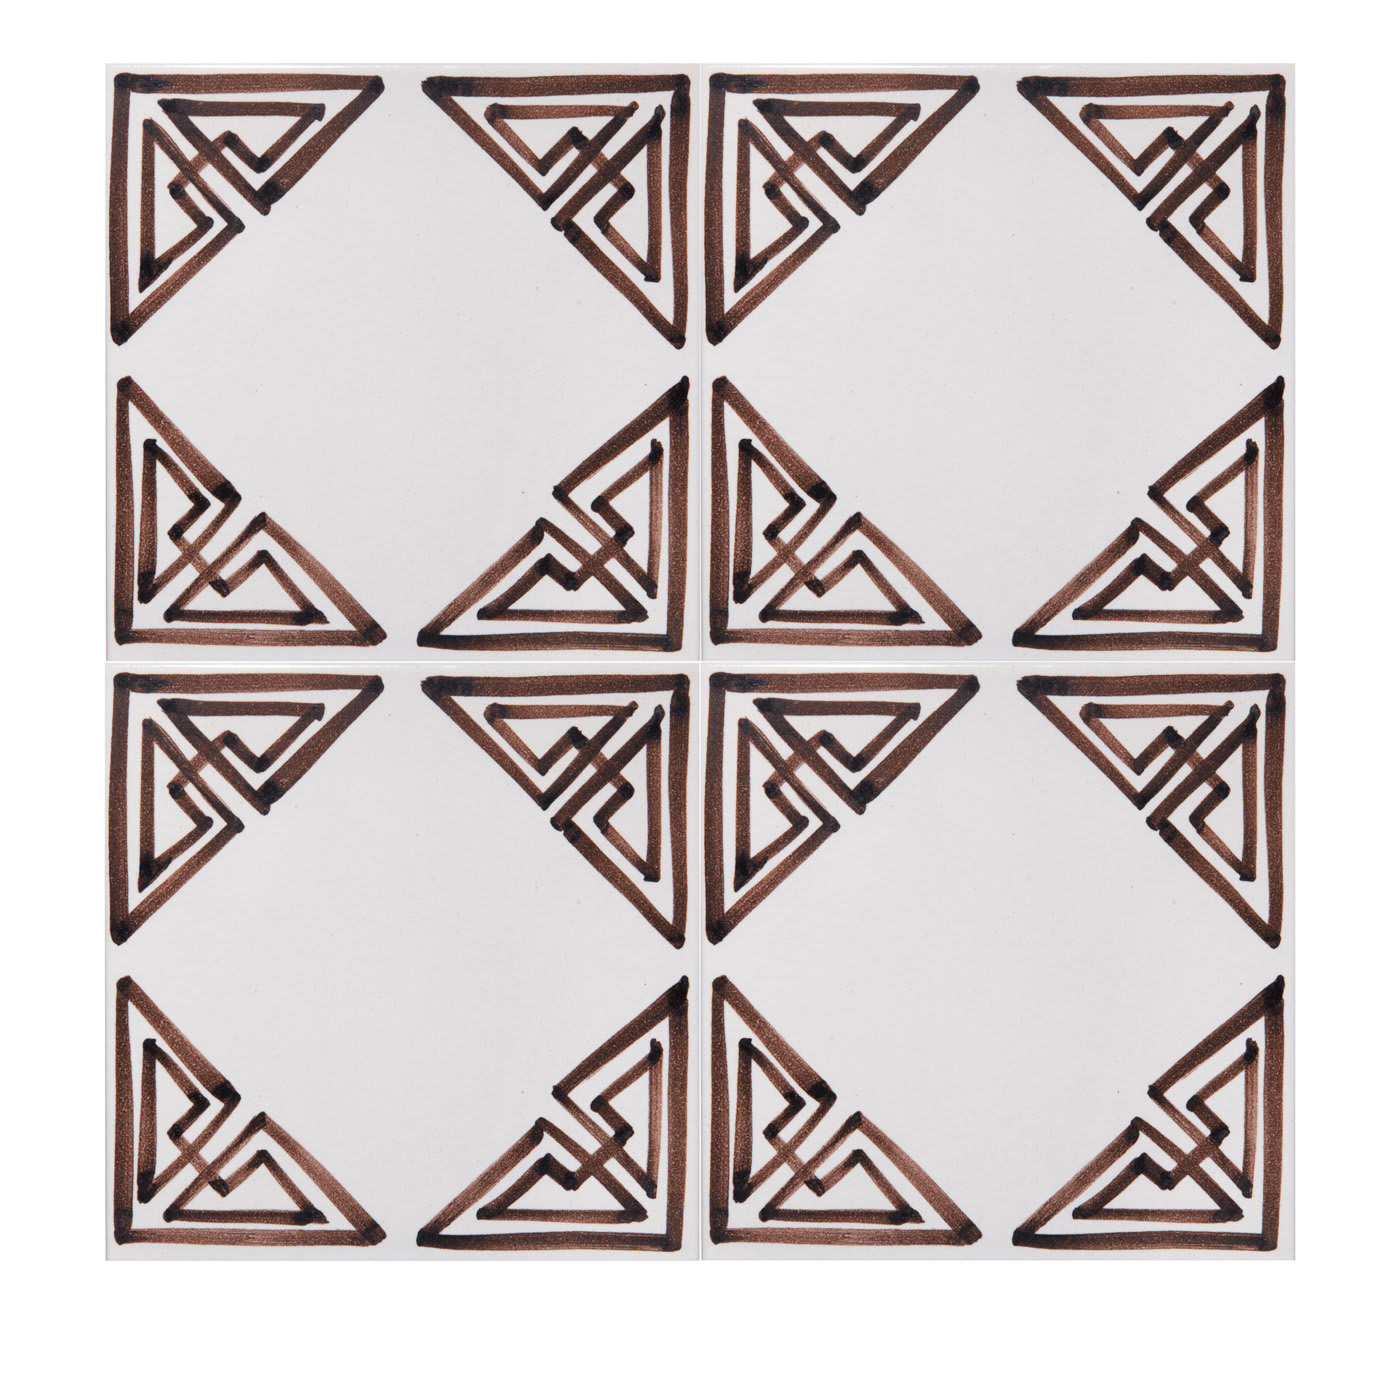 Set of 4 Room Tiles - Ceramica Pinto